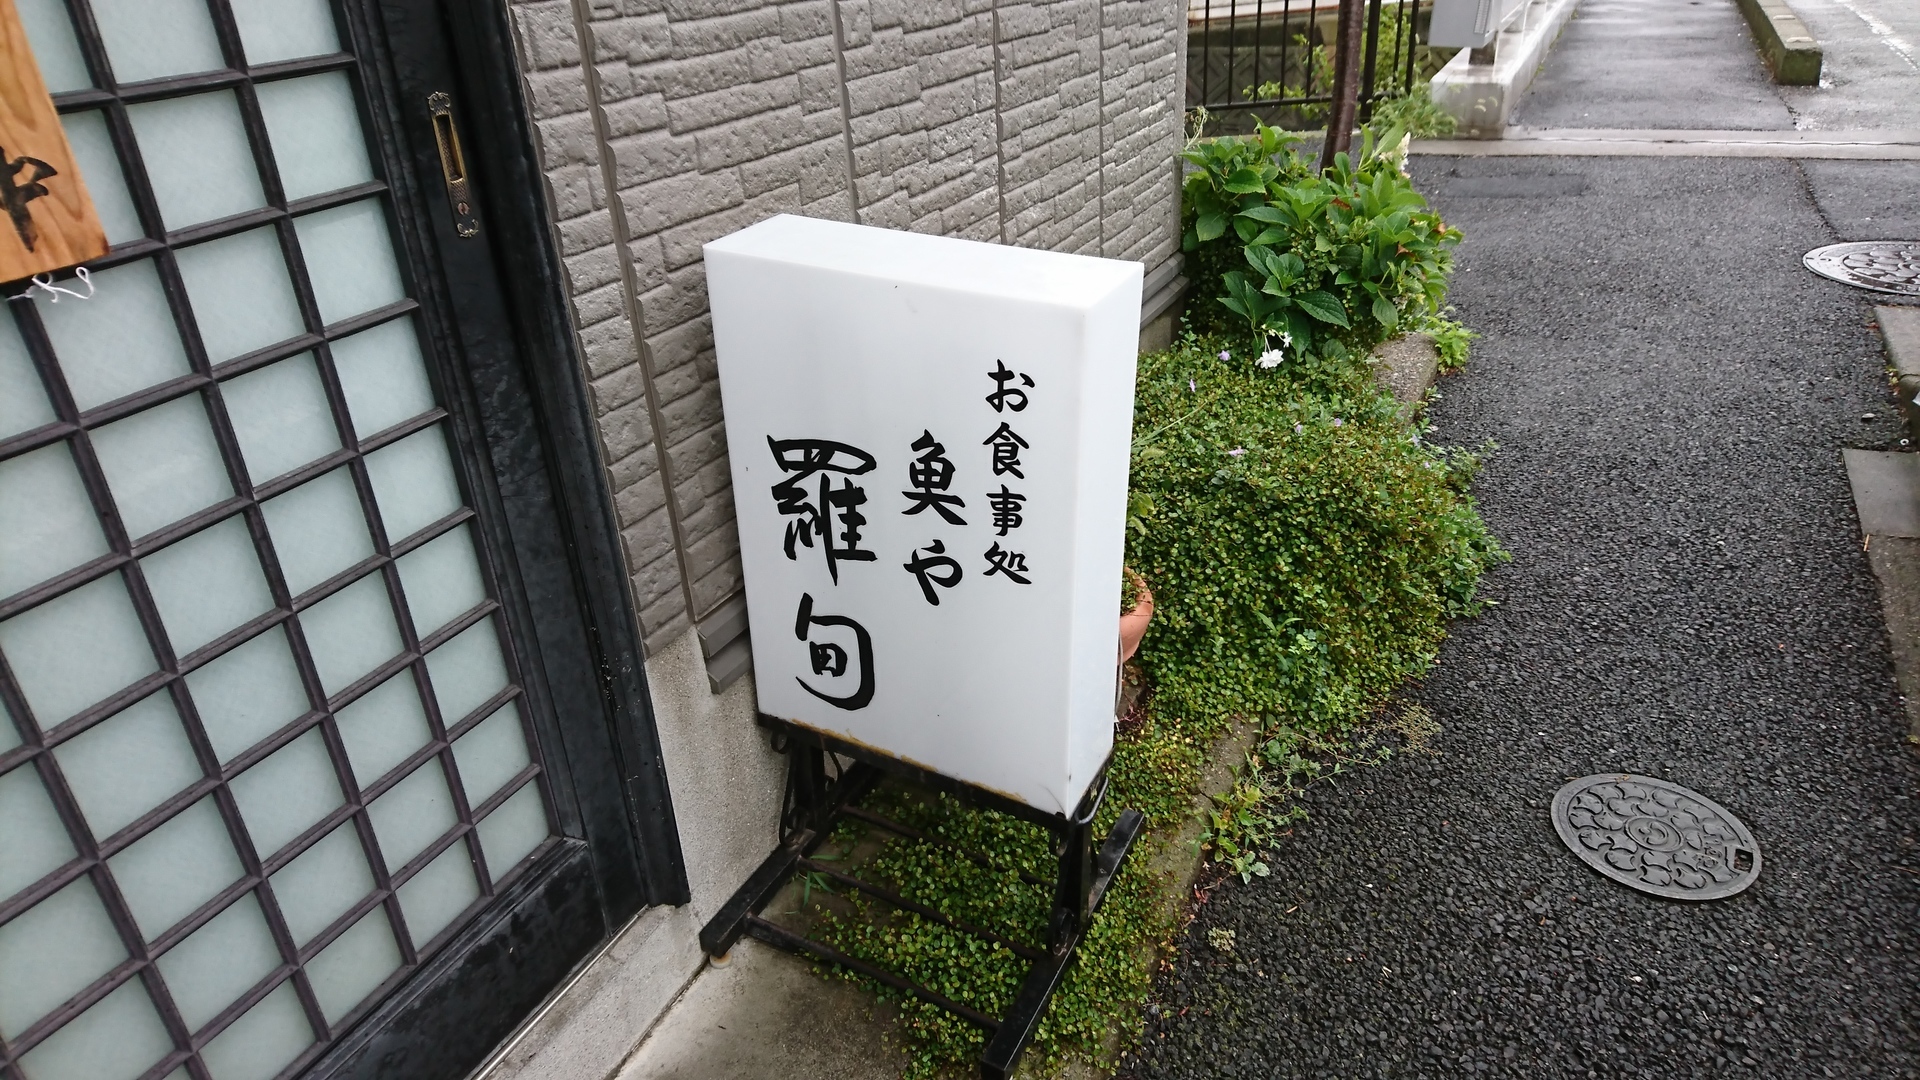 真っ黒な銀ダラ定食 魚や 羅甸 らてん 千葉県浦安 東京 近郊を食べ歩くブログ